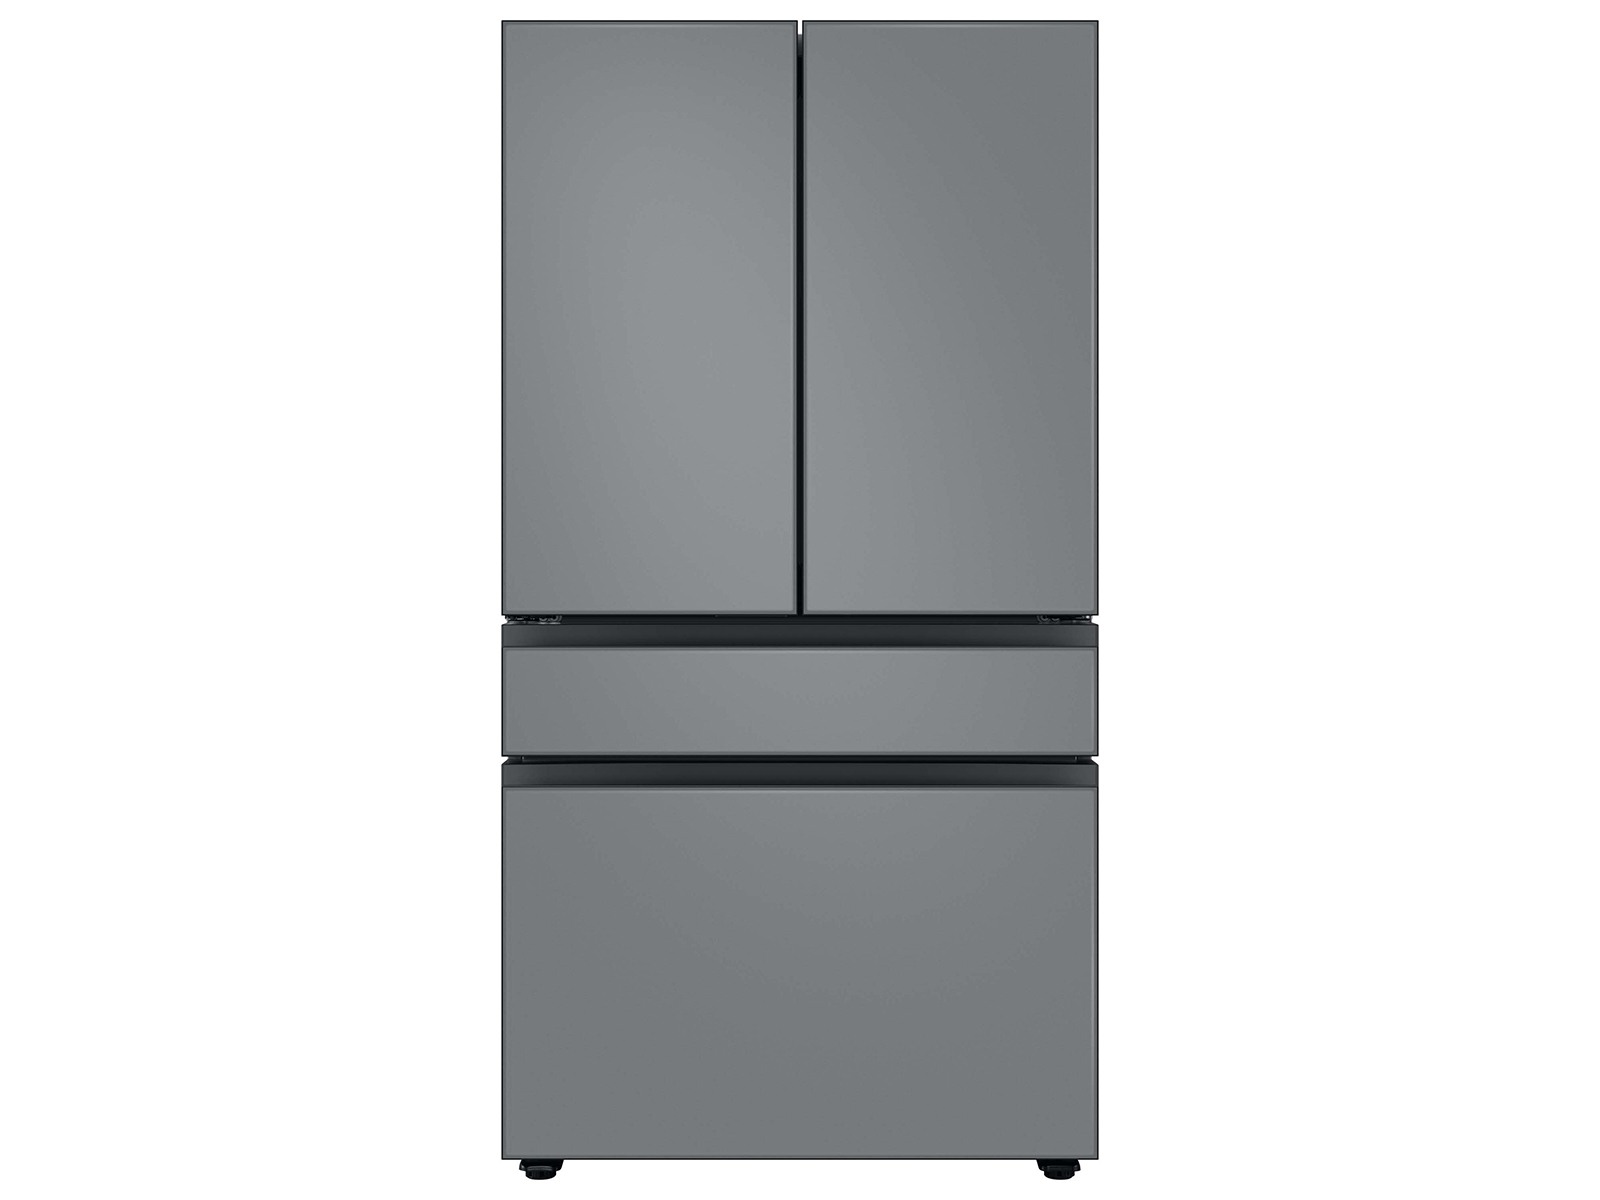 Bespoke 4-Door French Door Refrigerator (29 cu. ft.) with Customizable Door Panel Colors and Beverage Center™ in Matte Grey Glass